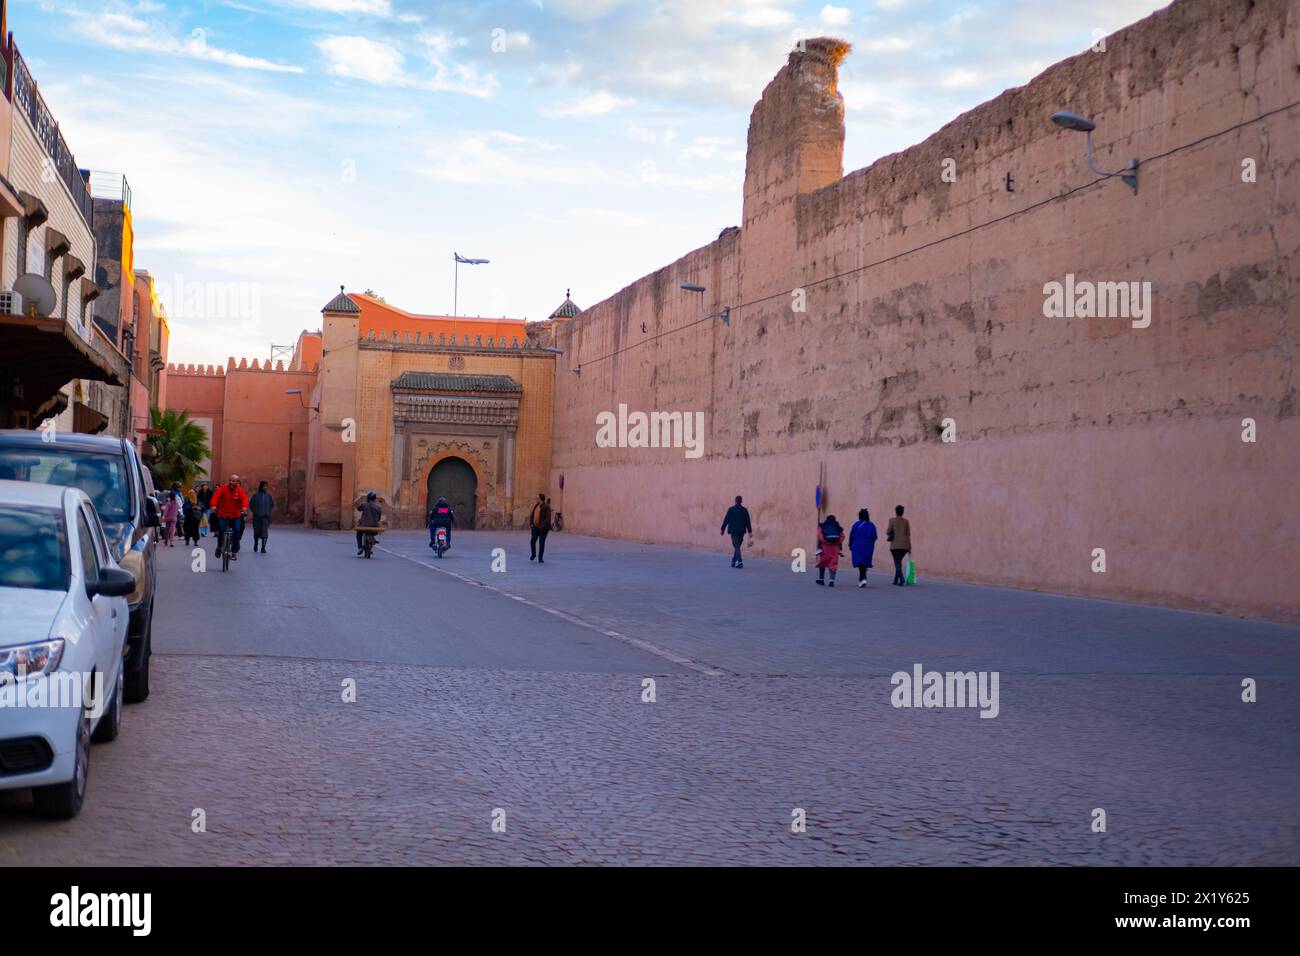 Les gens marchent le long du haut mur Red City Marrakech se pressent sur les affaires, le paysage urbain africain authentique, les activités quotidiennes et les interactions que les gens vivent Banque D'Images